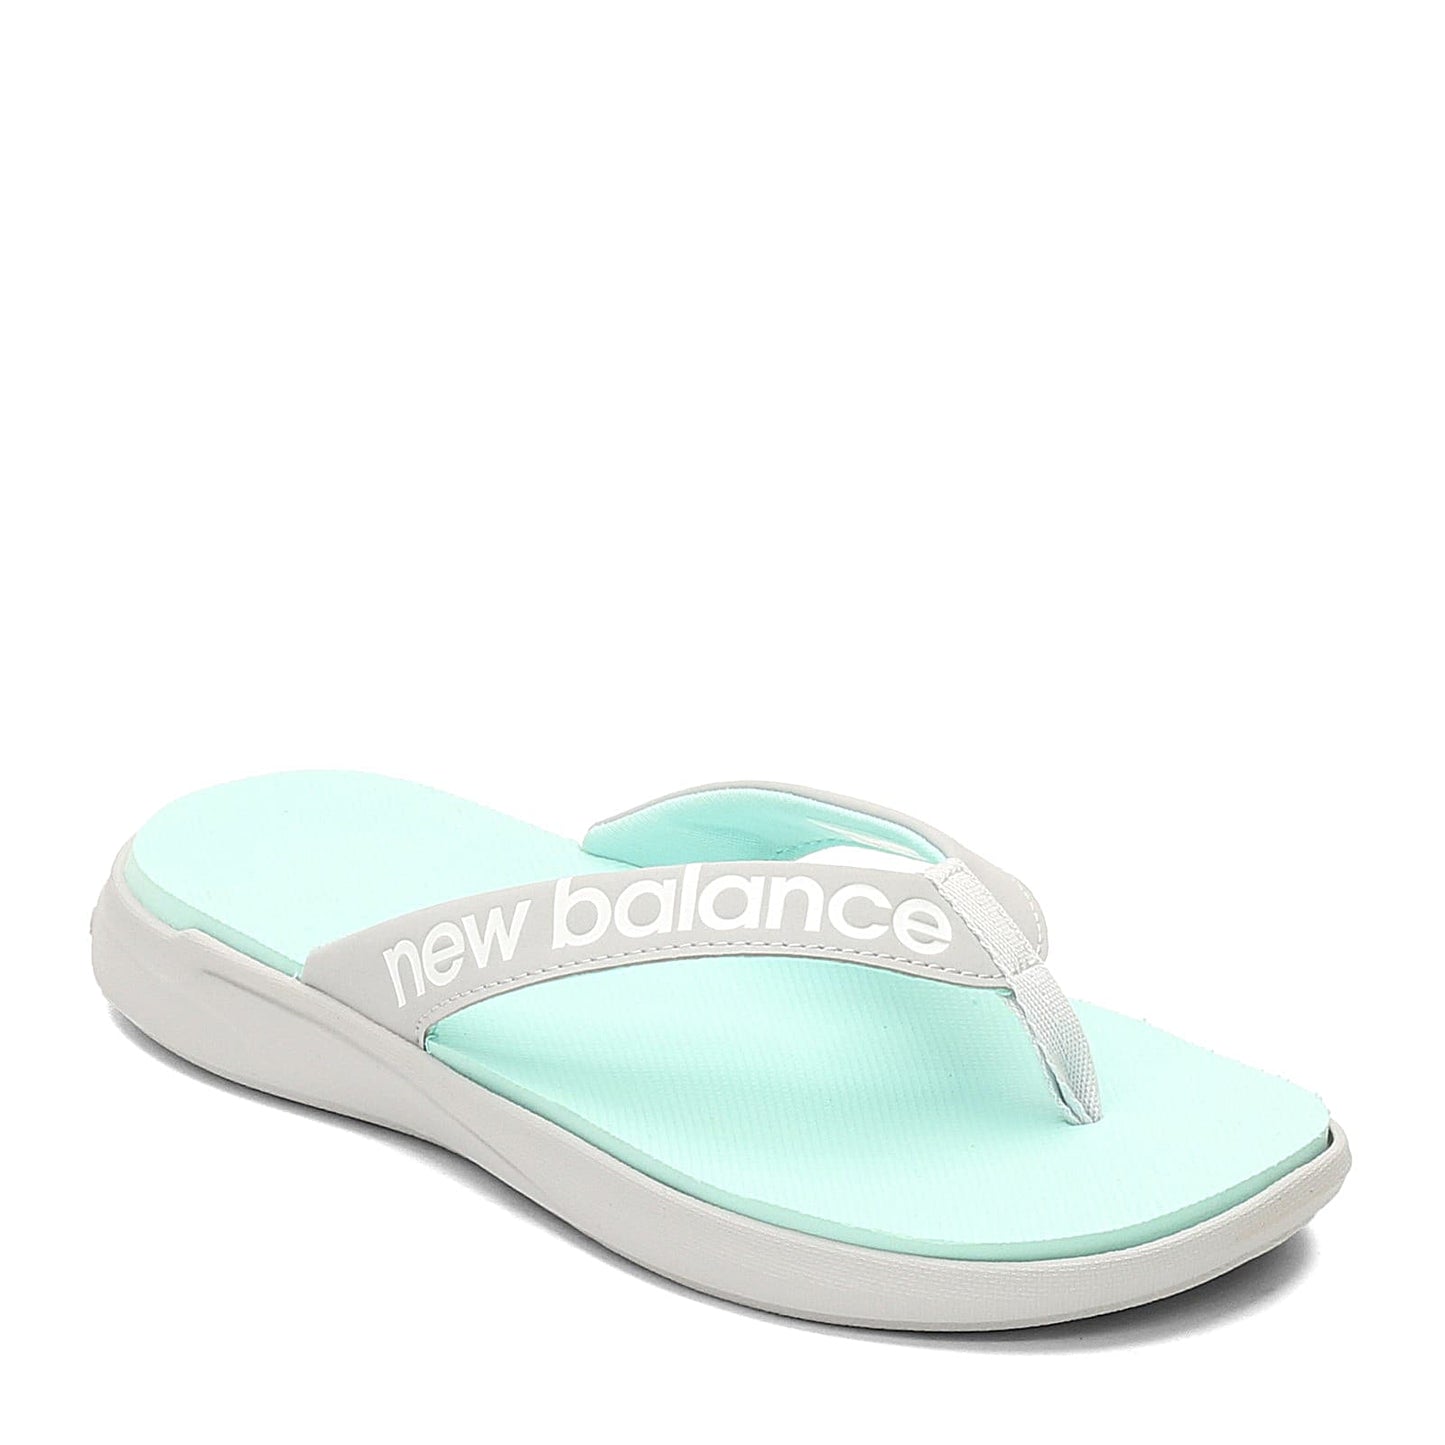 Peltz Shoes  Women's New Balance 340 Thong Sandals